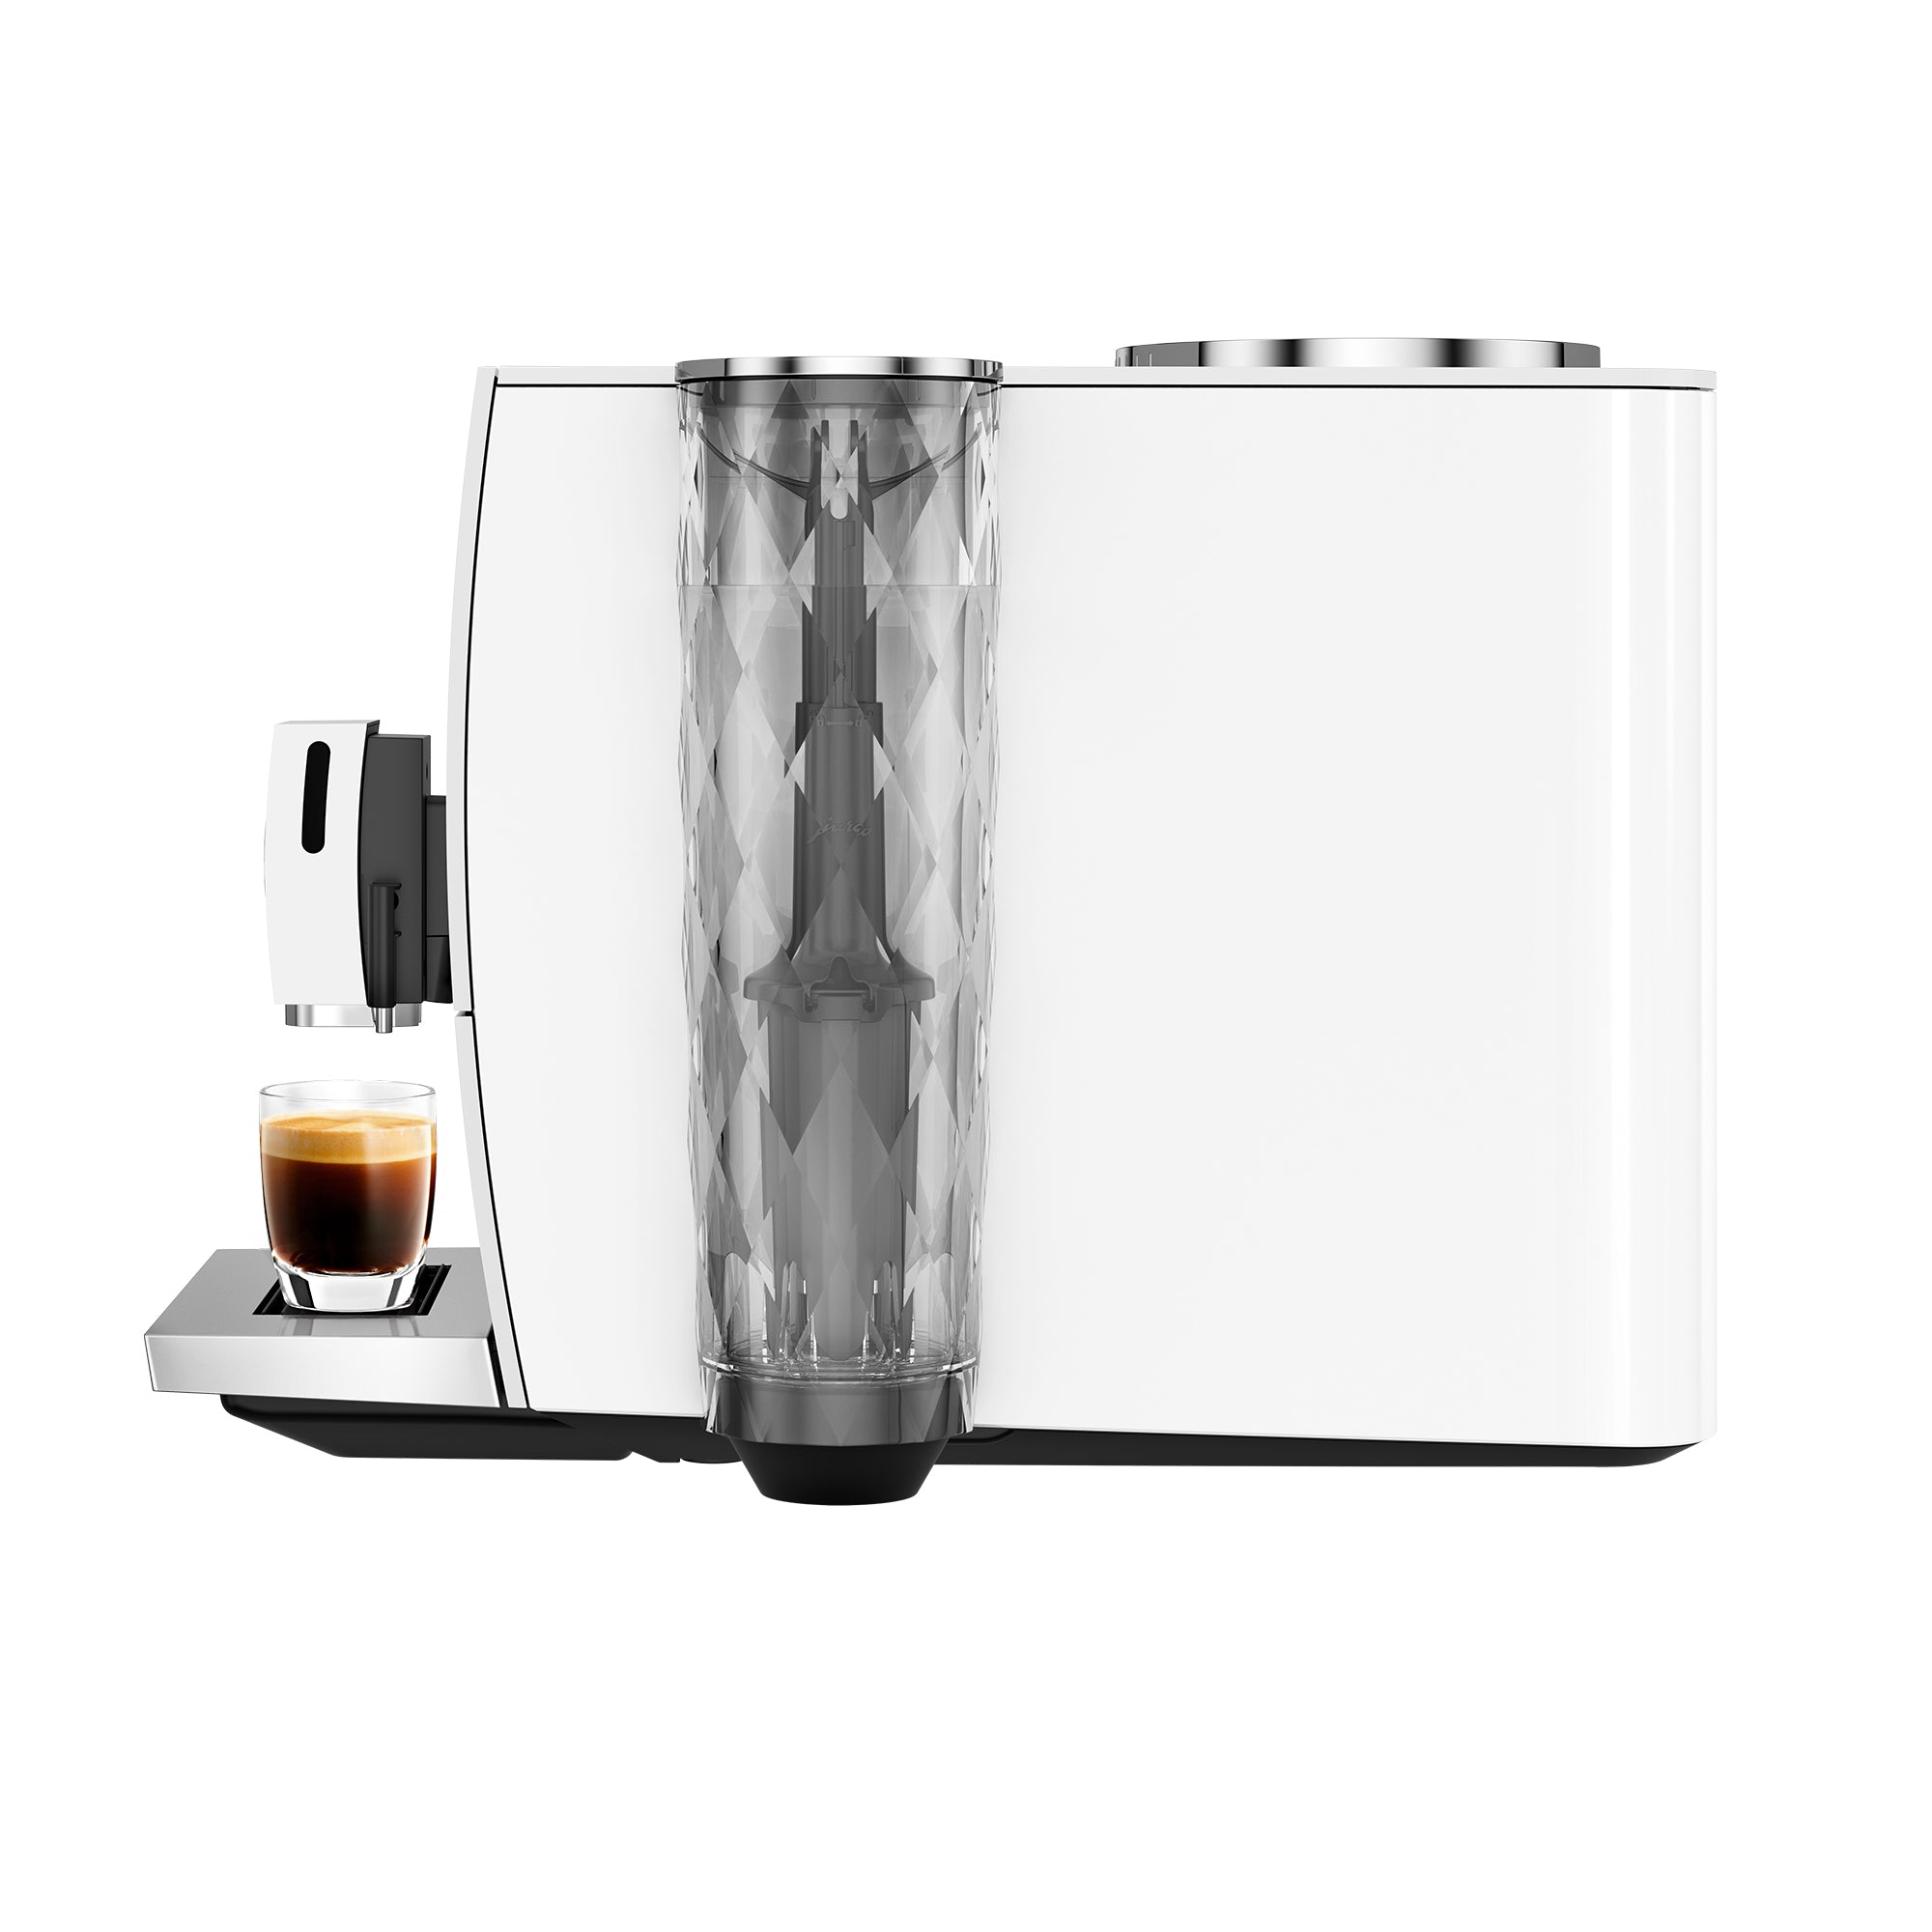 JURA ENA 8 Espresso Machine - Full Nordic White – Whole Latte Love